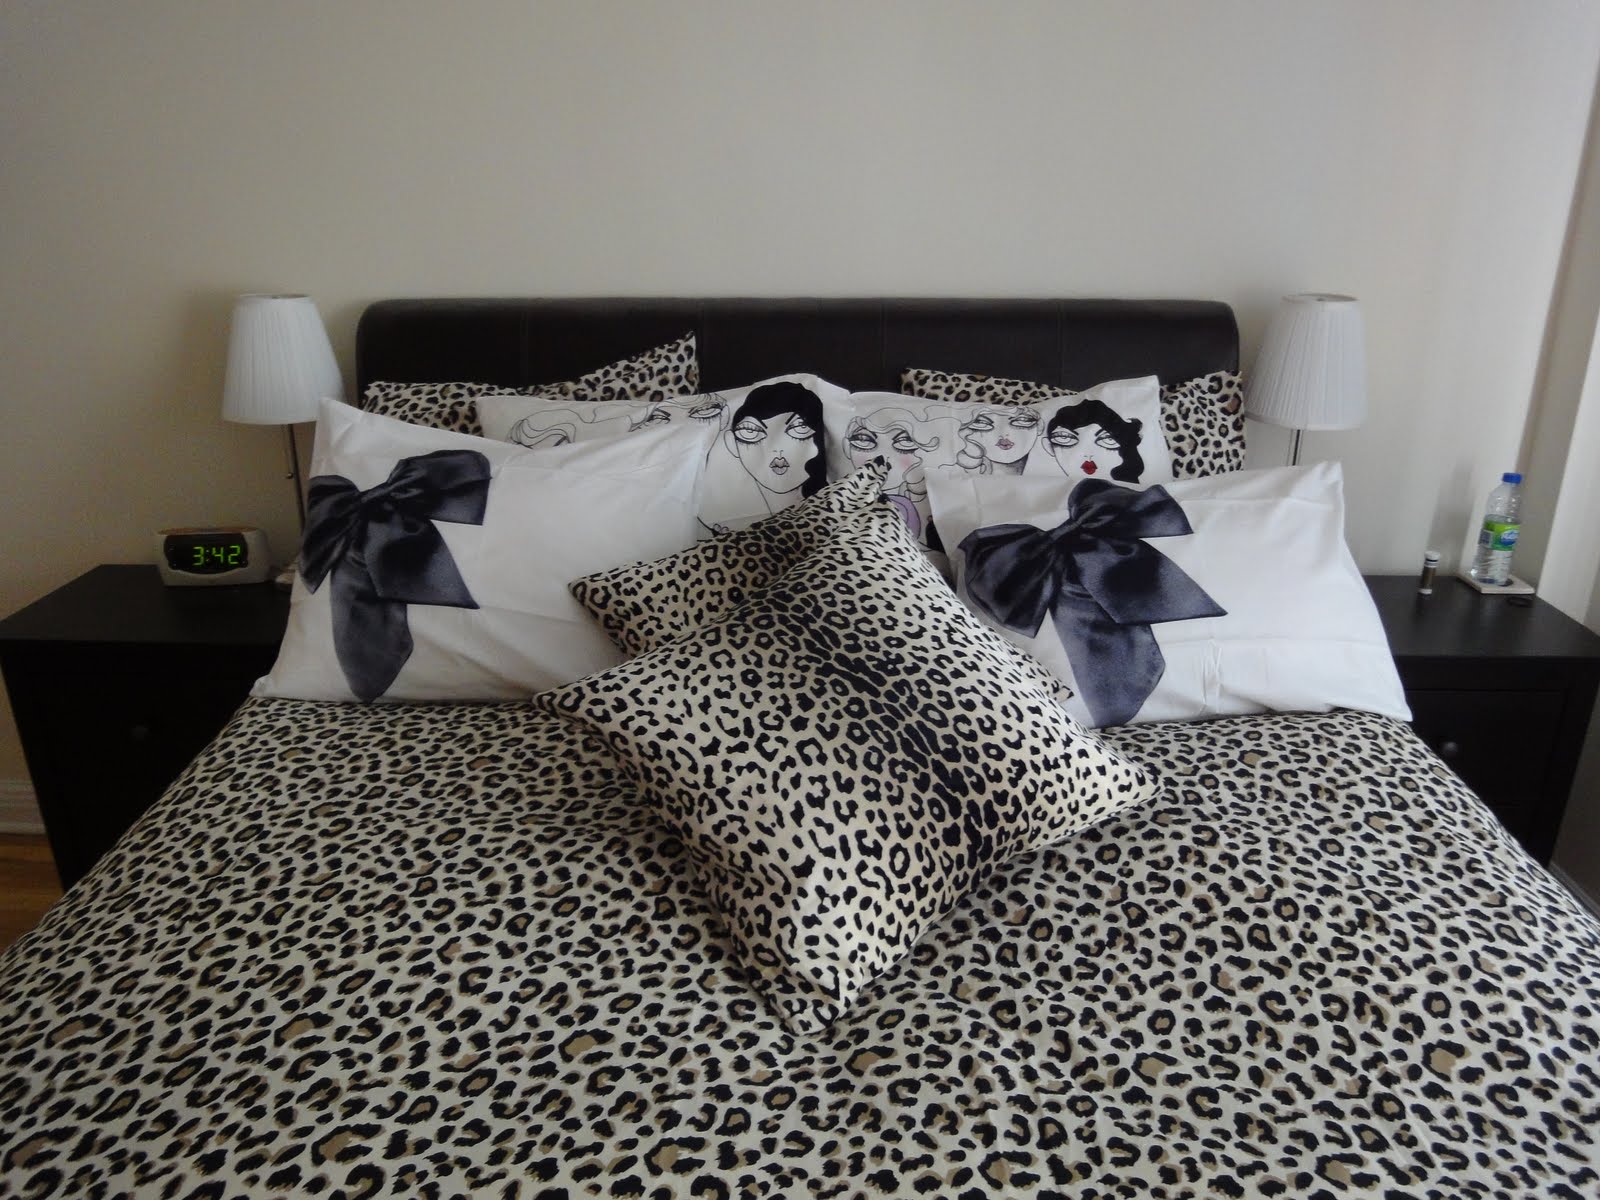 ViktoriaLove: Leopard In The Bedroom